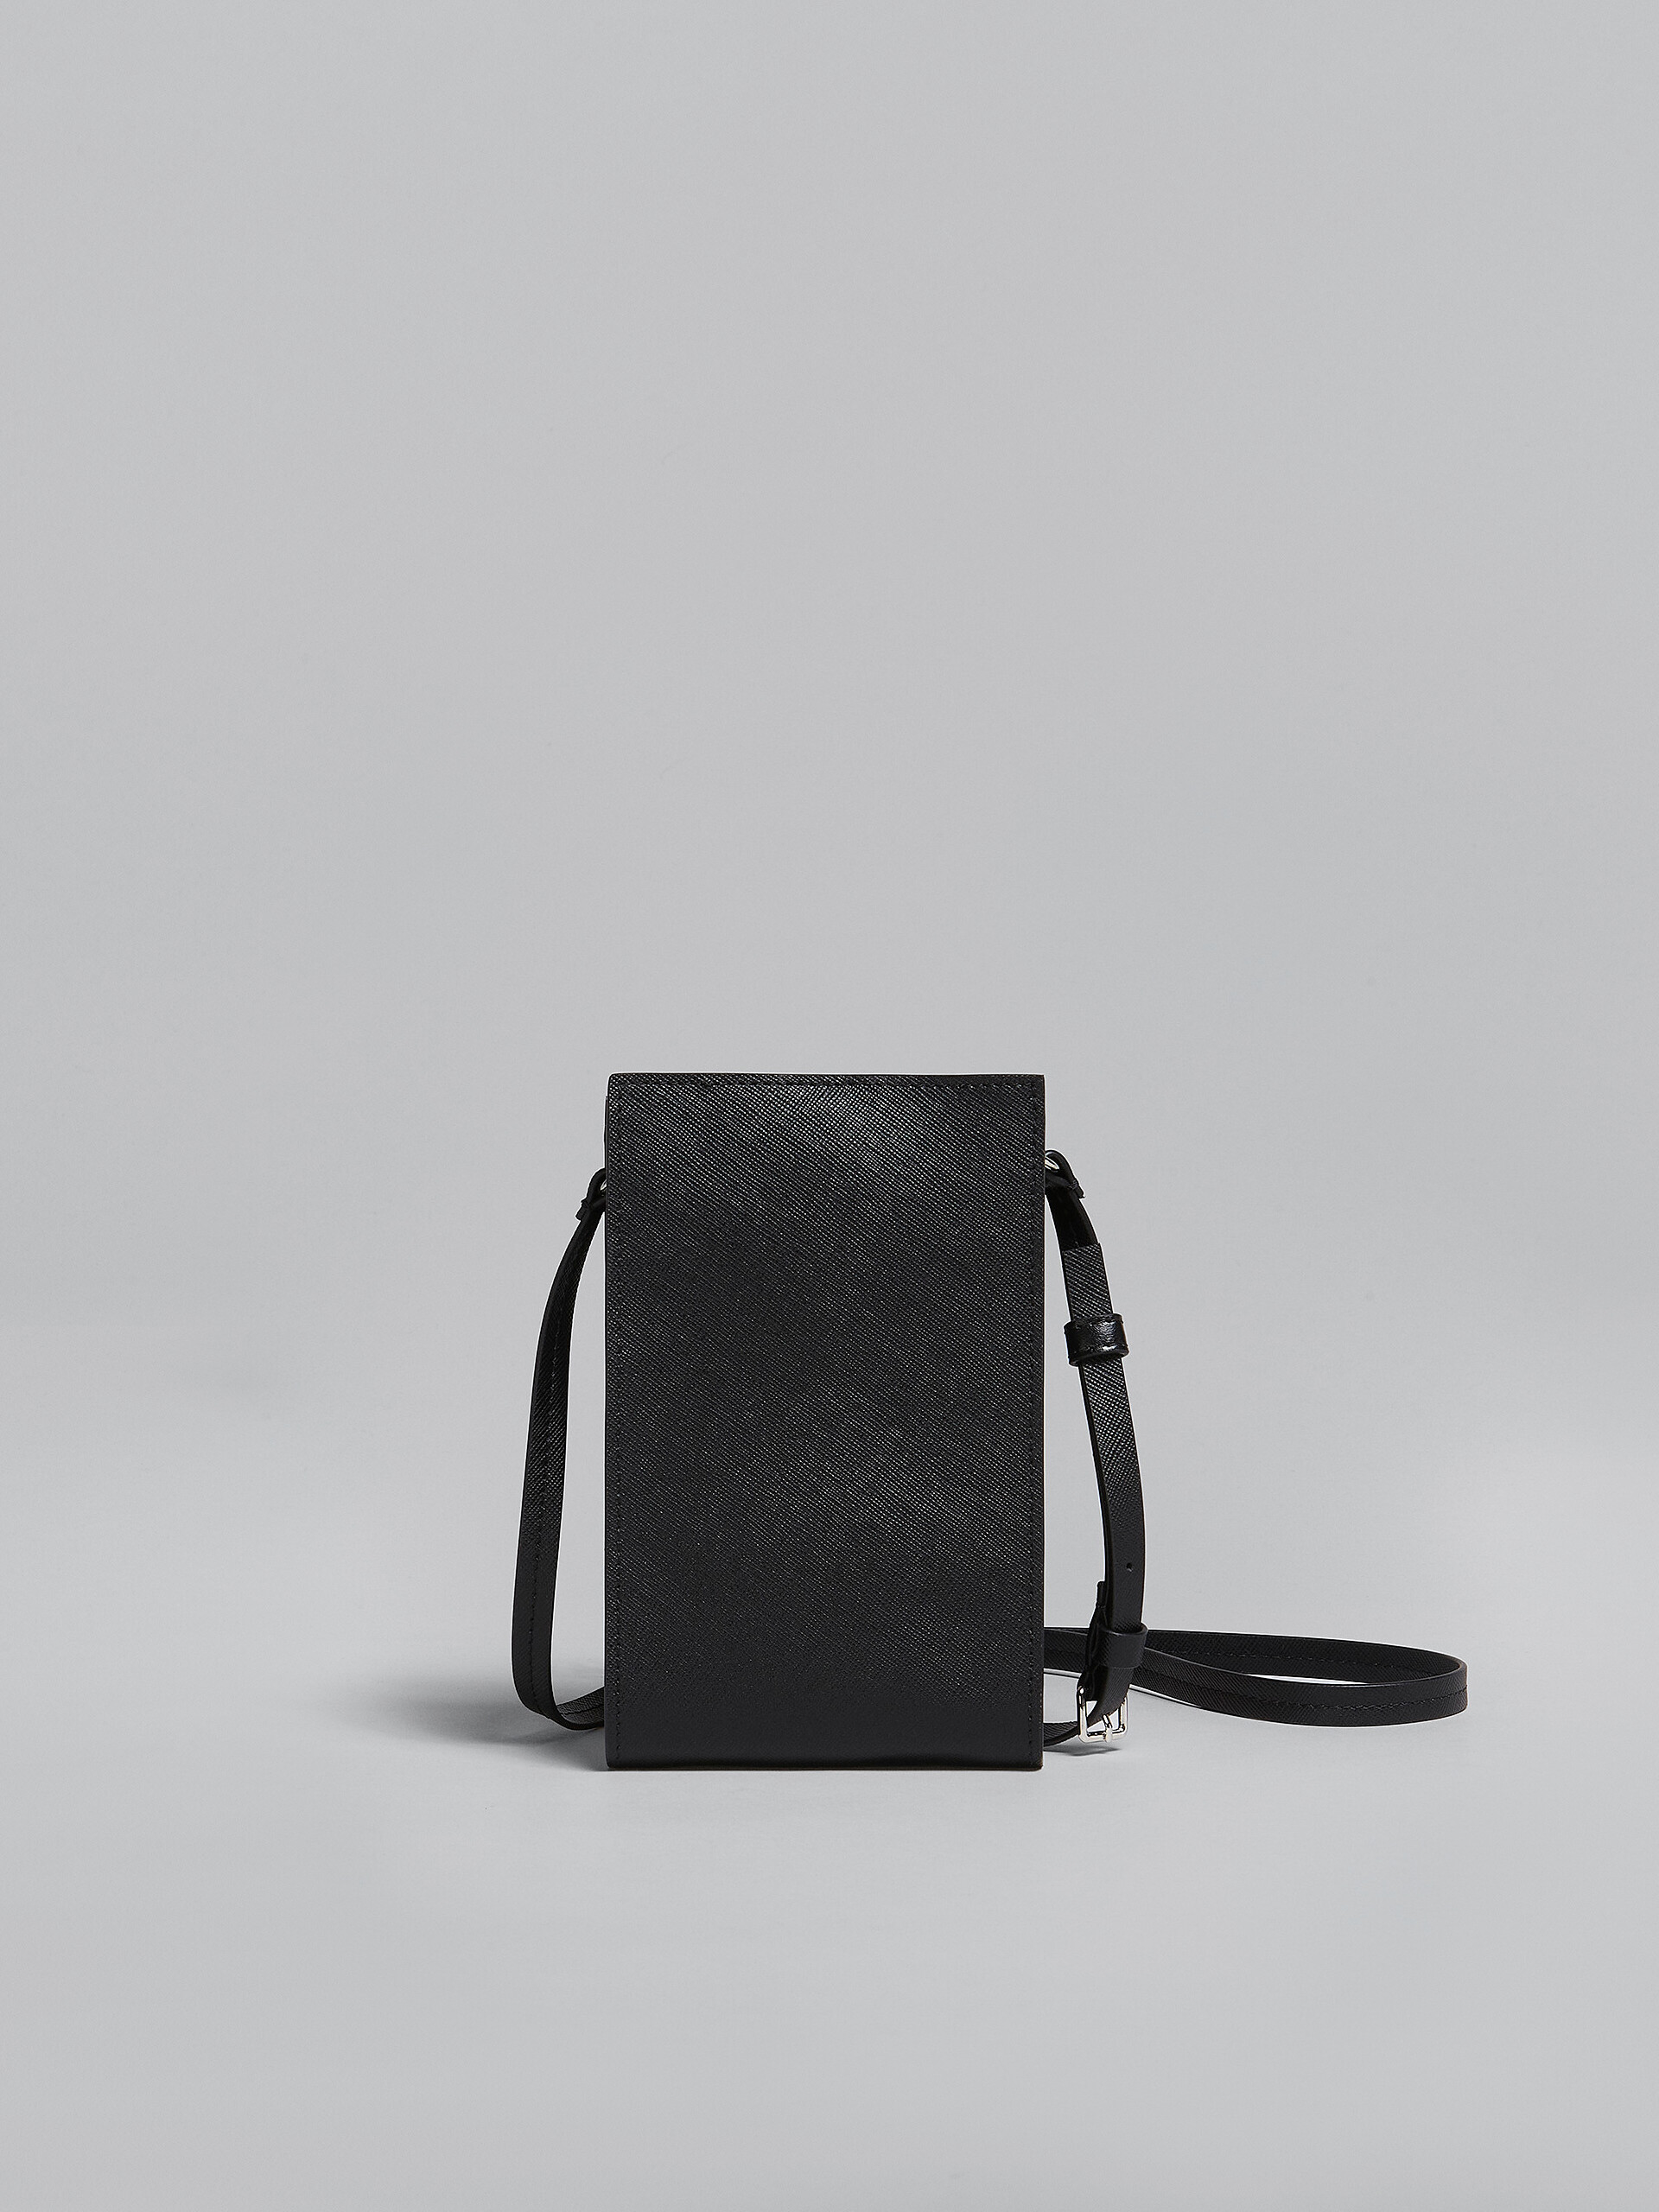 Smartphone-Hülle aus schwarzem Saffiano-Leder - Brieftaschen & Kleinlederwaren - Image 3